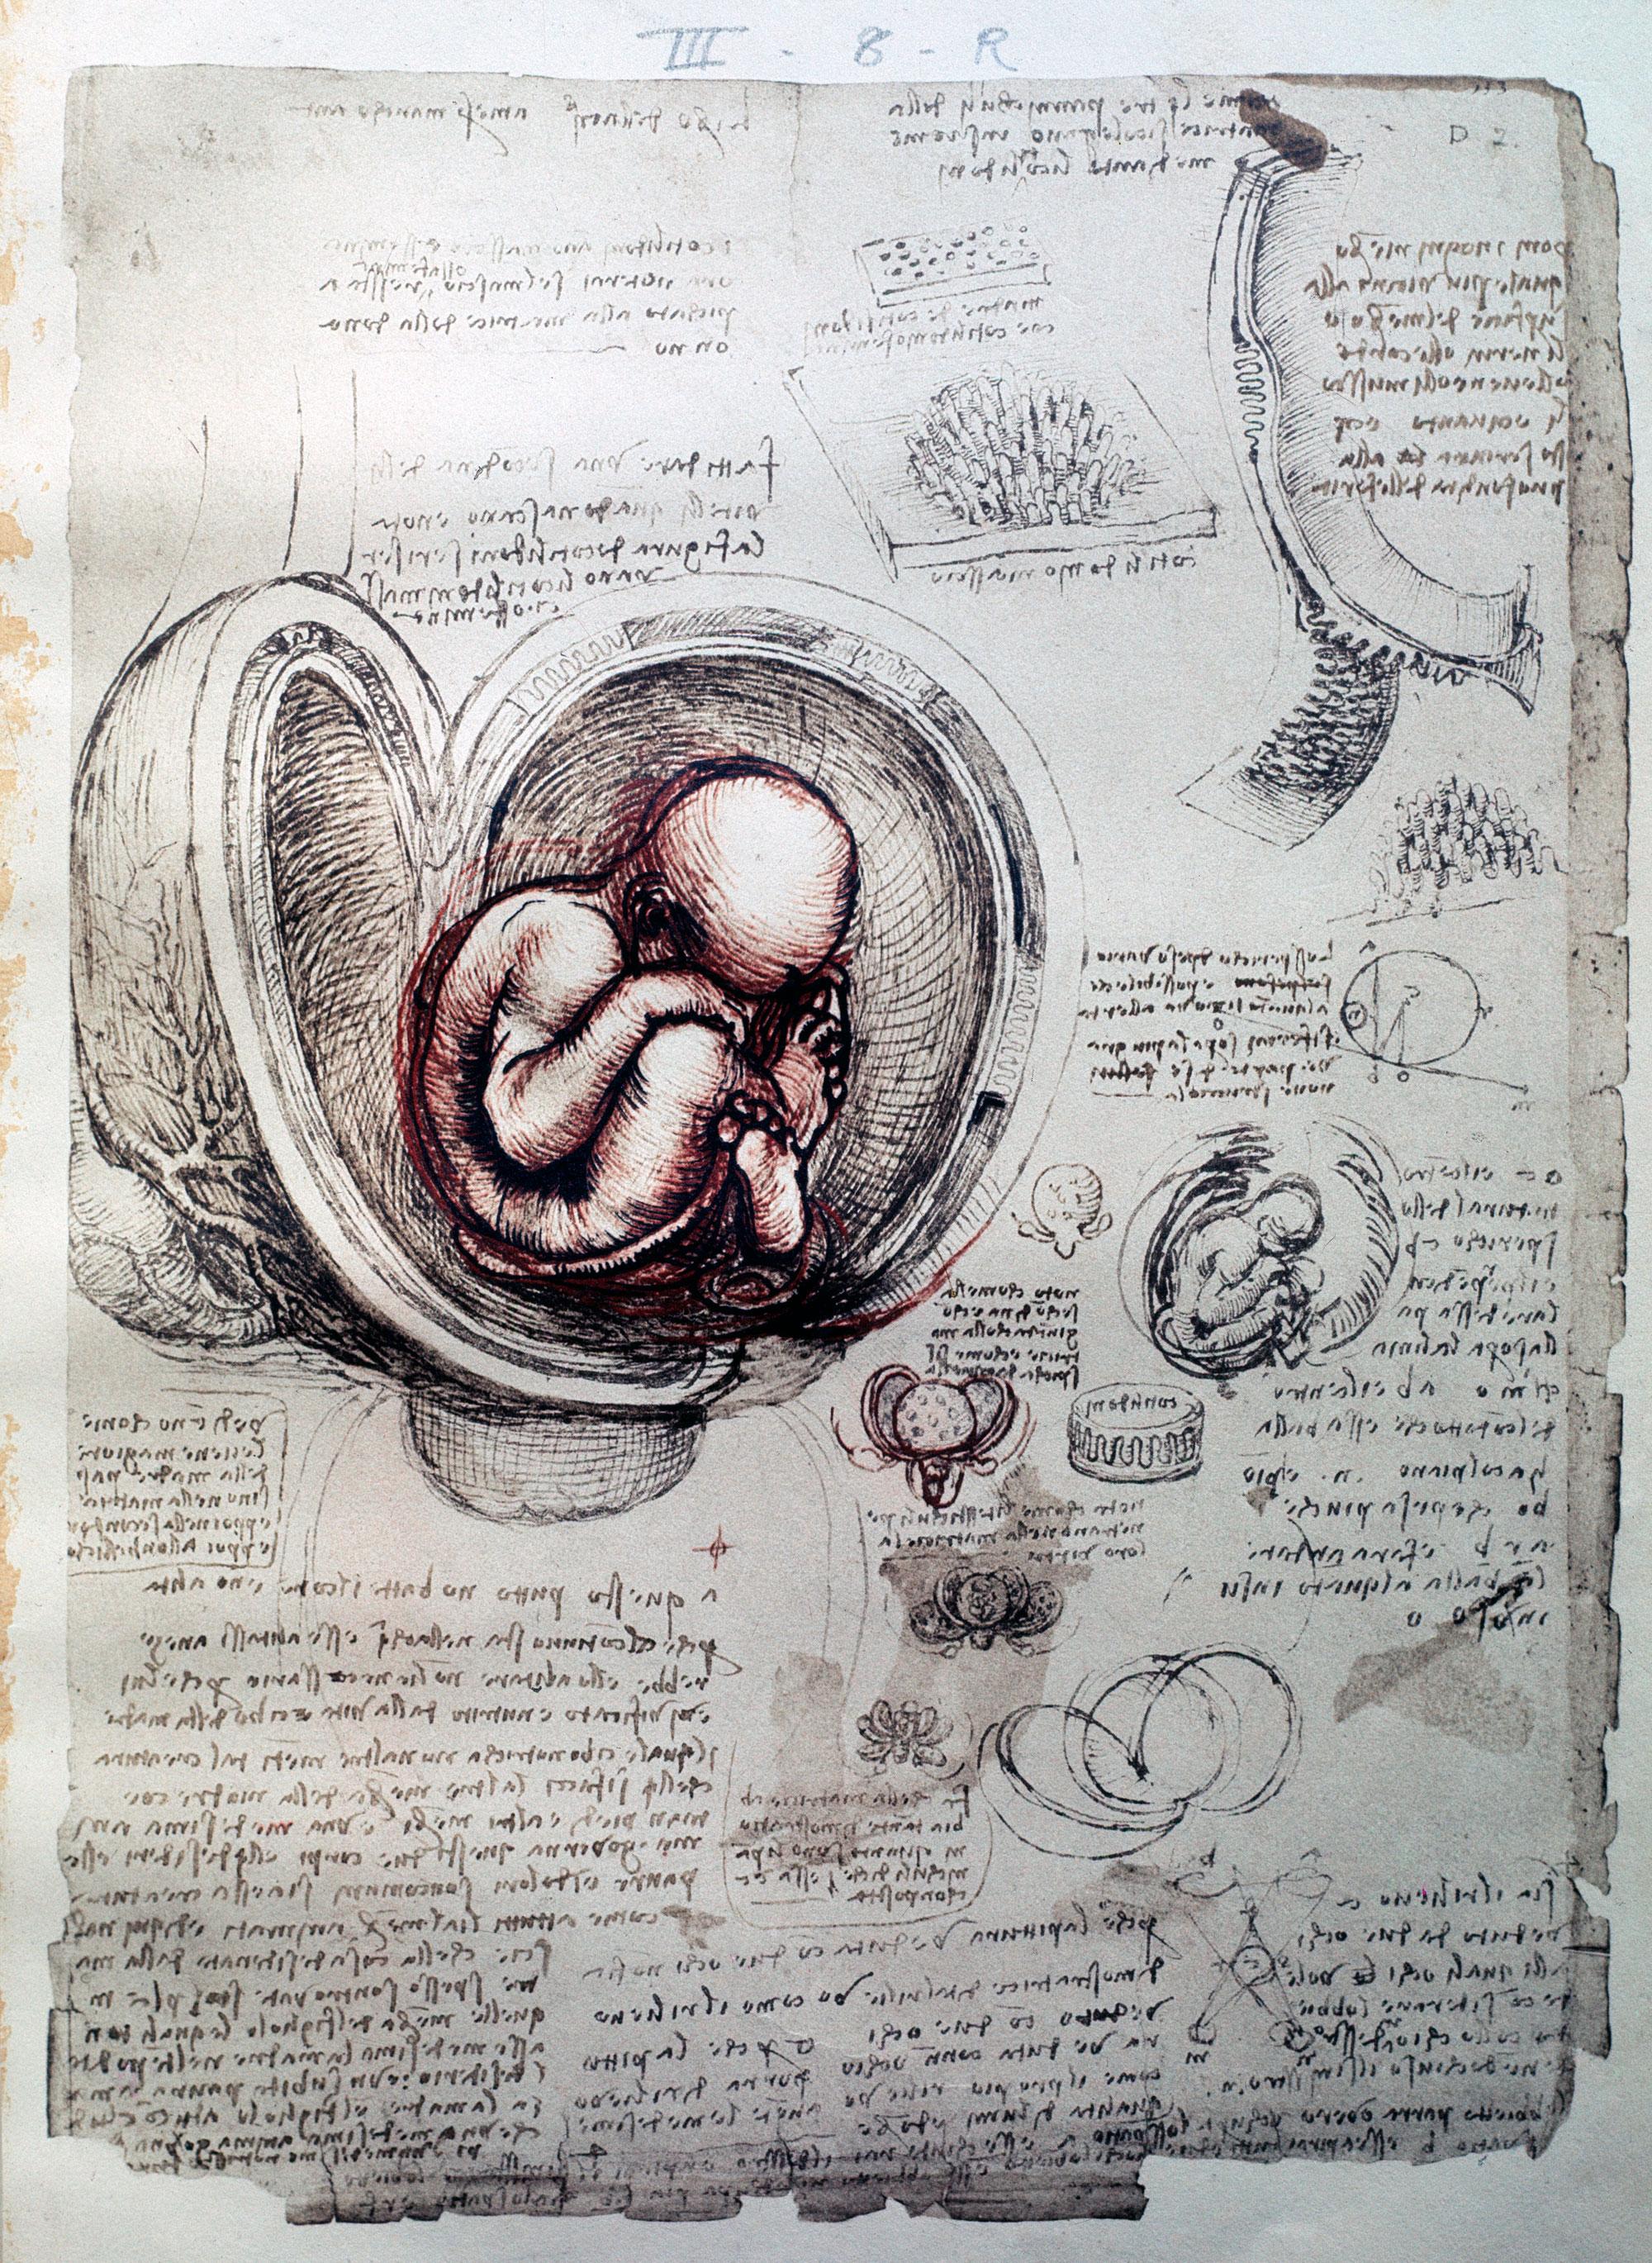 Planche anatomique d'un foetus selon Leonardo da Vinci [Royal Collection Windsor - Luisa Ricciarini/Leemage/afp]